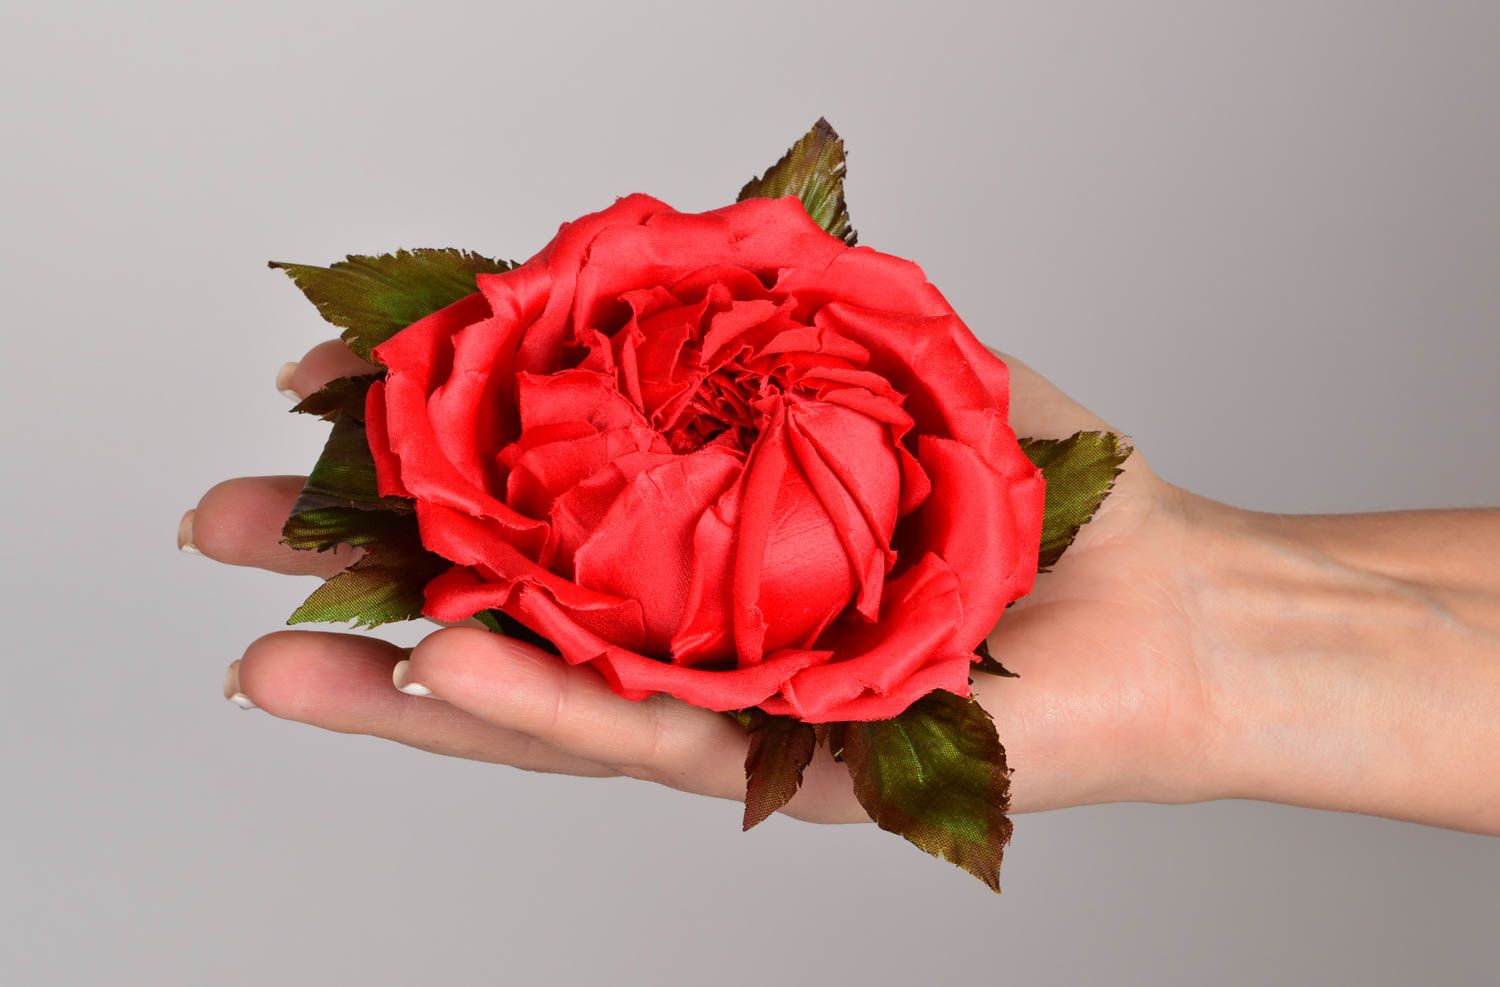 Брошь из шелка хэнд мэйд брошь-заколка красная роза авторская бижутерия фото 5